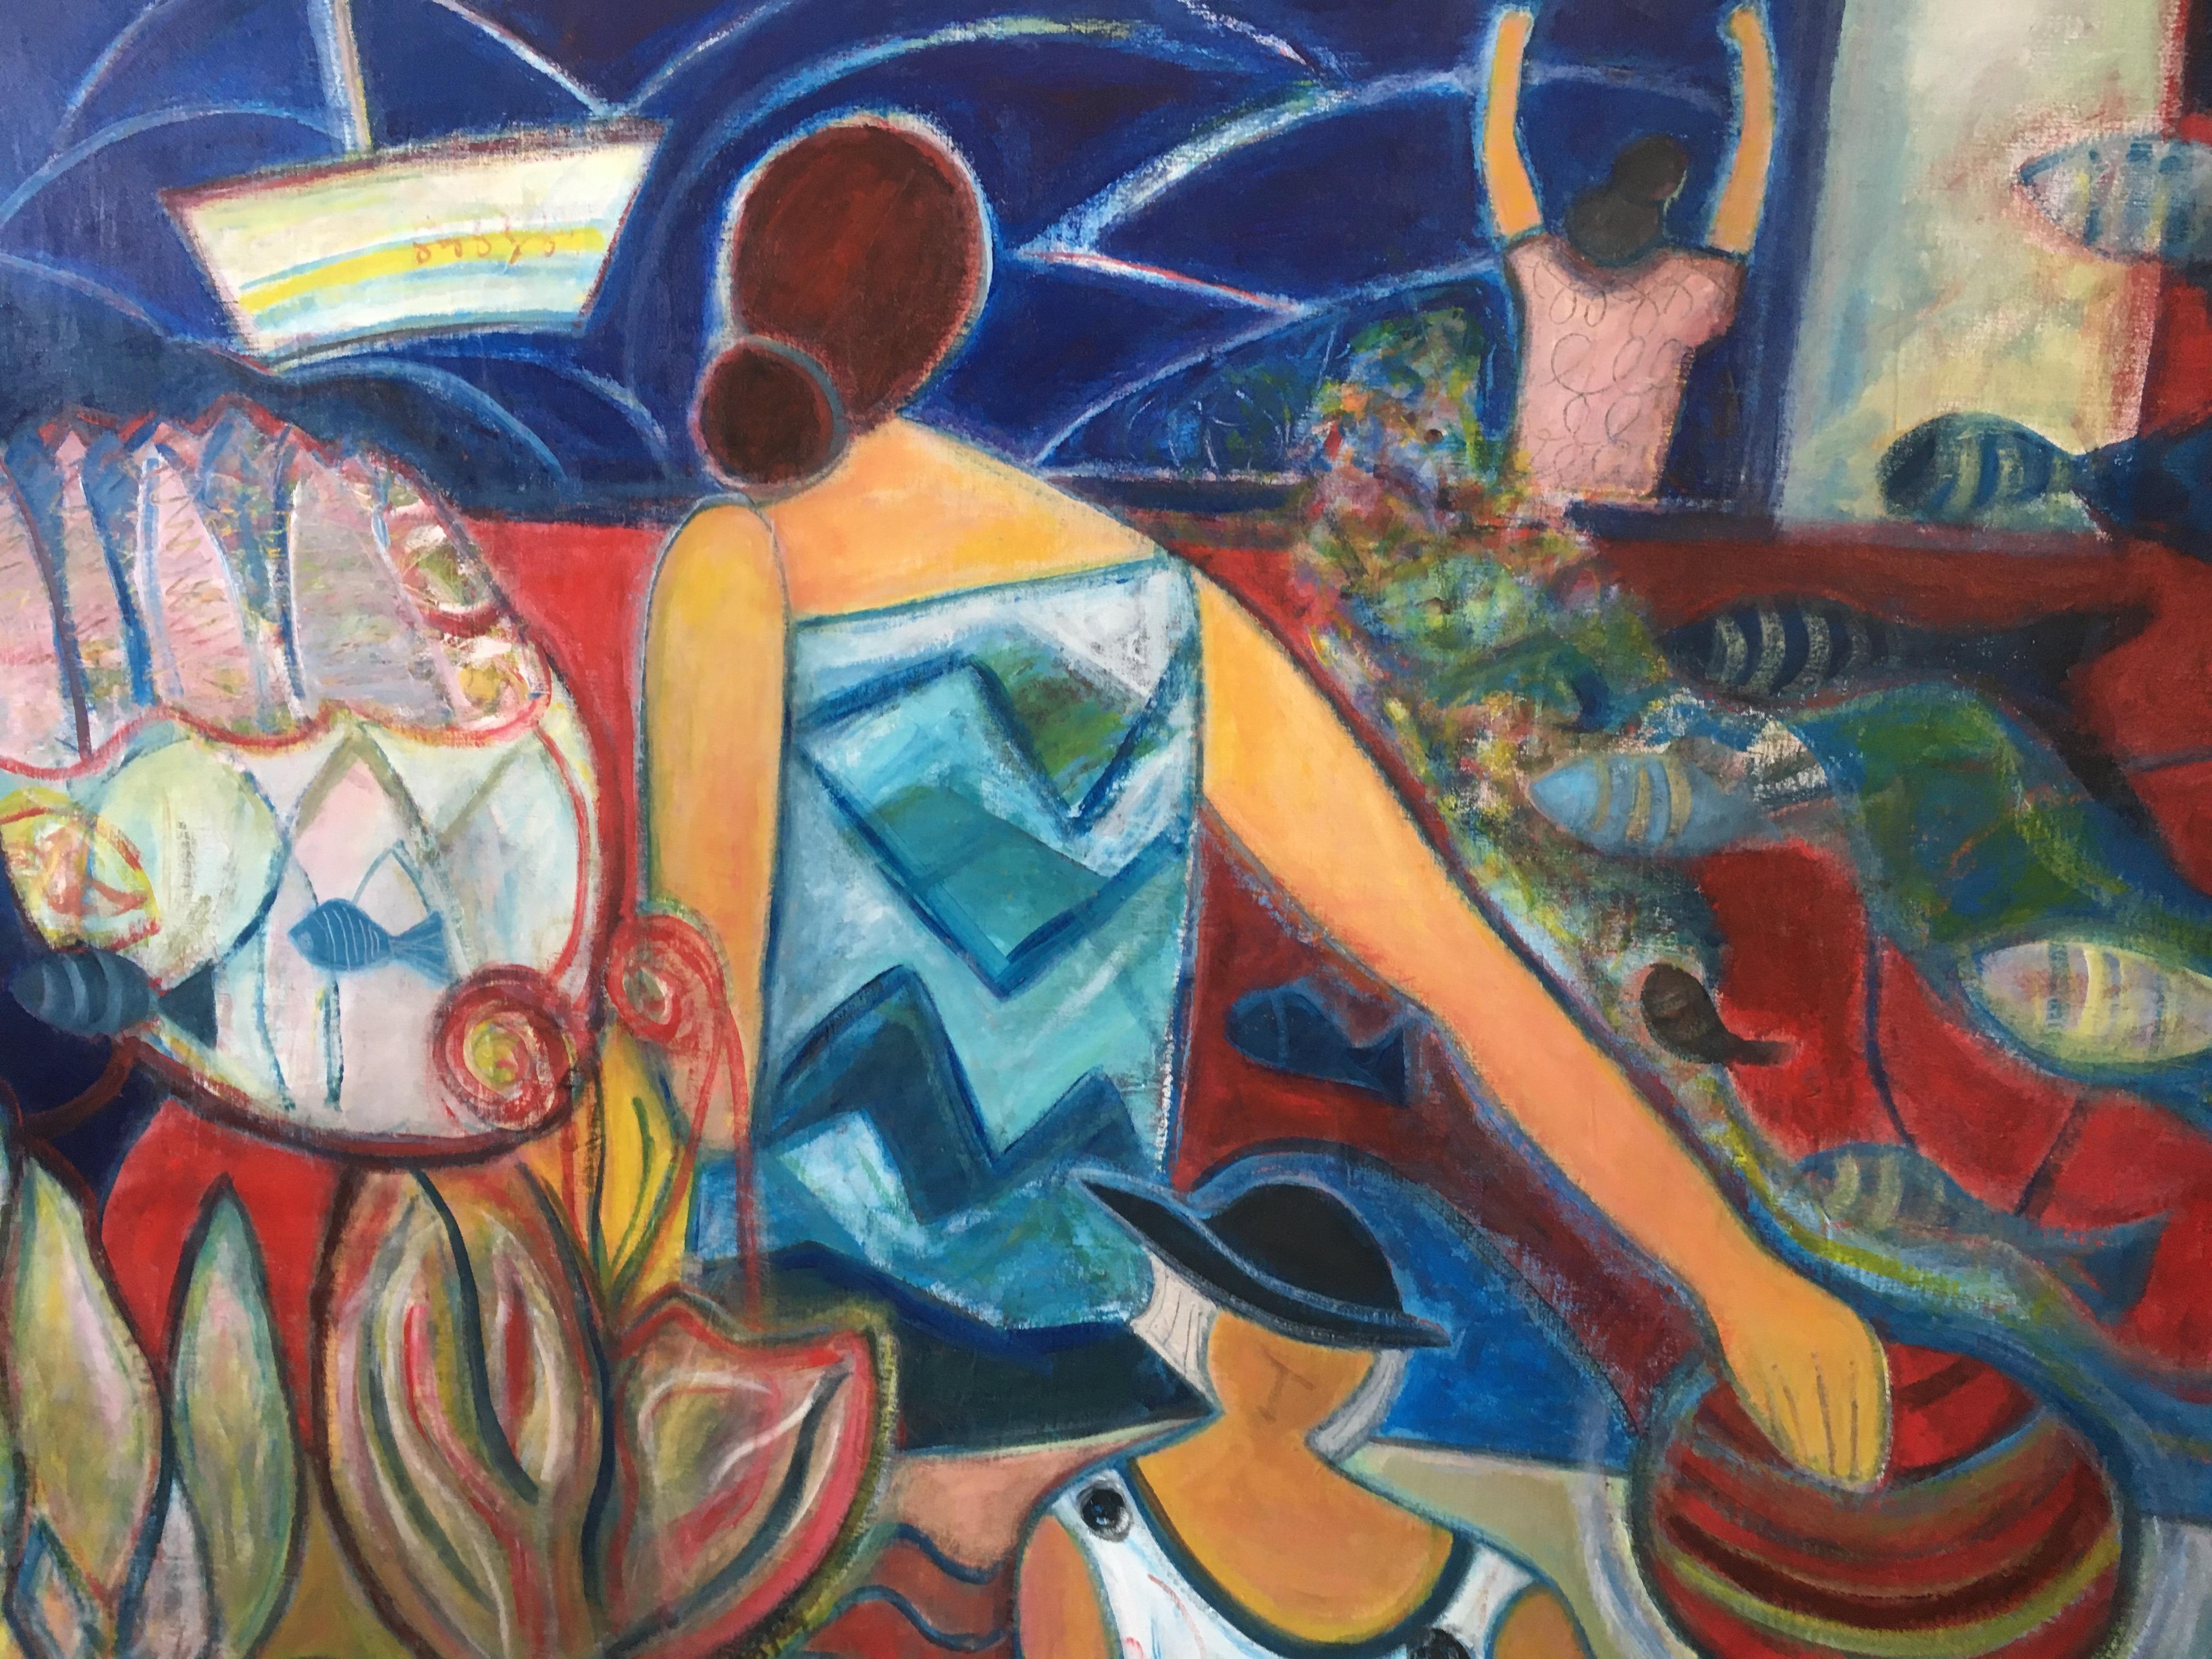 Diese 39 "x 47" Acryl auf Leinwand Gemälde von Josette Simon-Gestin zeigt eine bunte Sommer imaginären Meereslandschaft mit weiblichen Figuren. "Ich habe diese Serie von drei Werken gemalt, als ich in der Bretagne eingeschlossen war, betäubt und